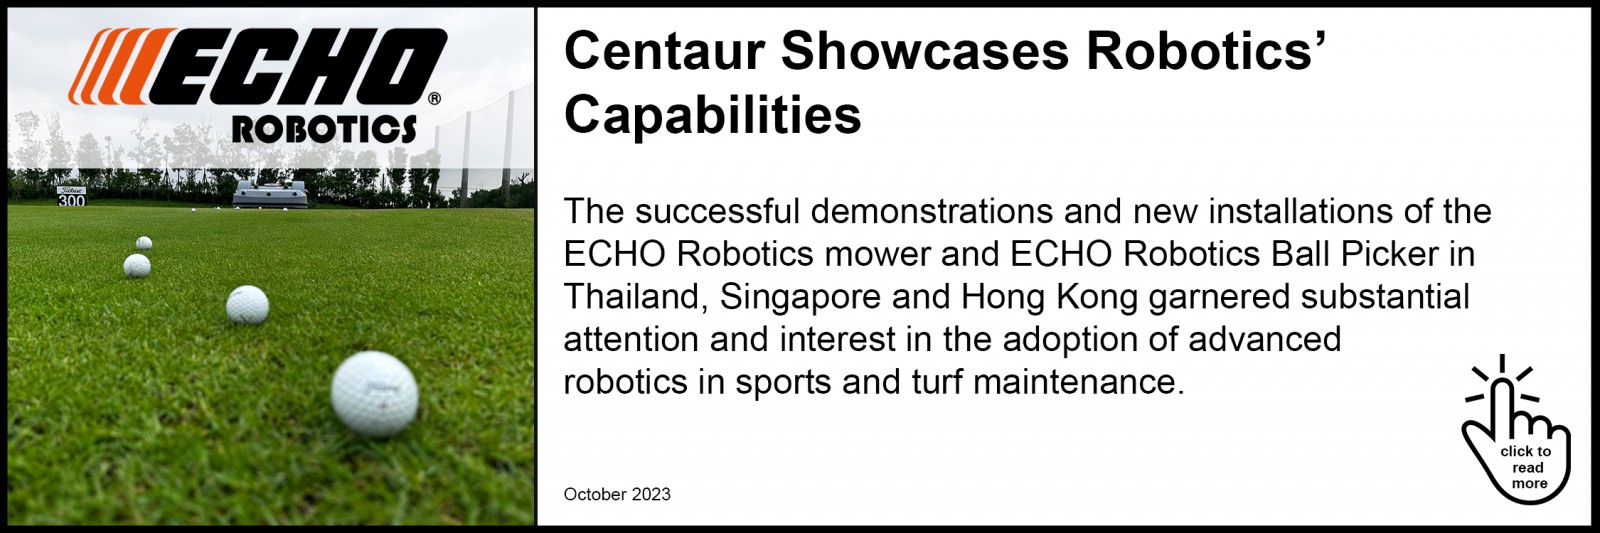 Centaur Showcases Robotics’ Capabilities